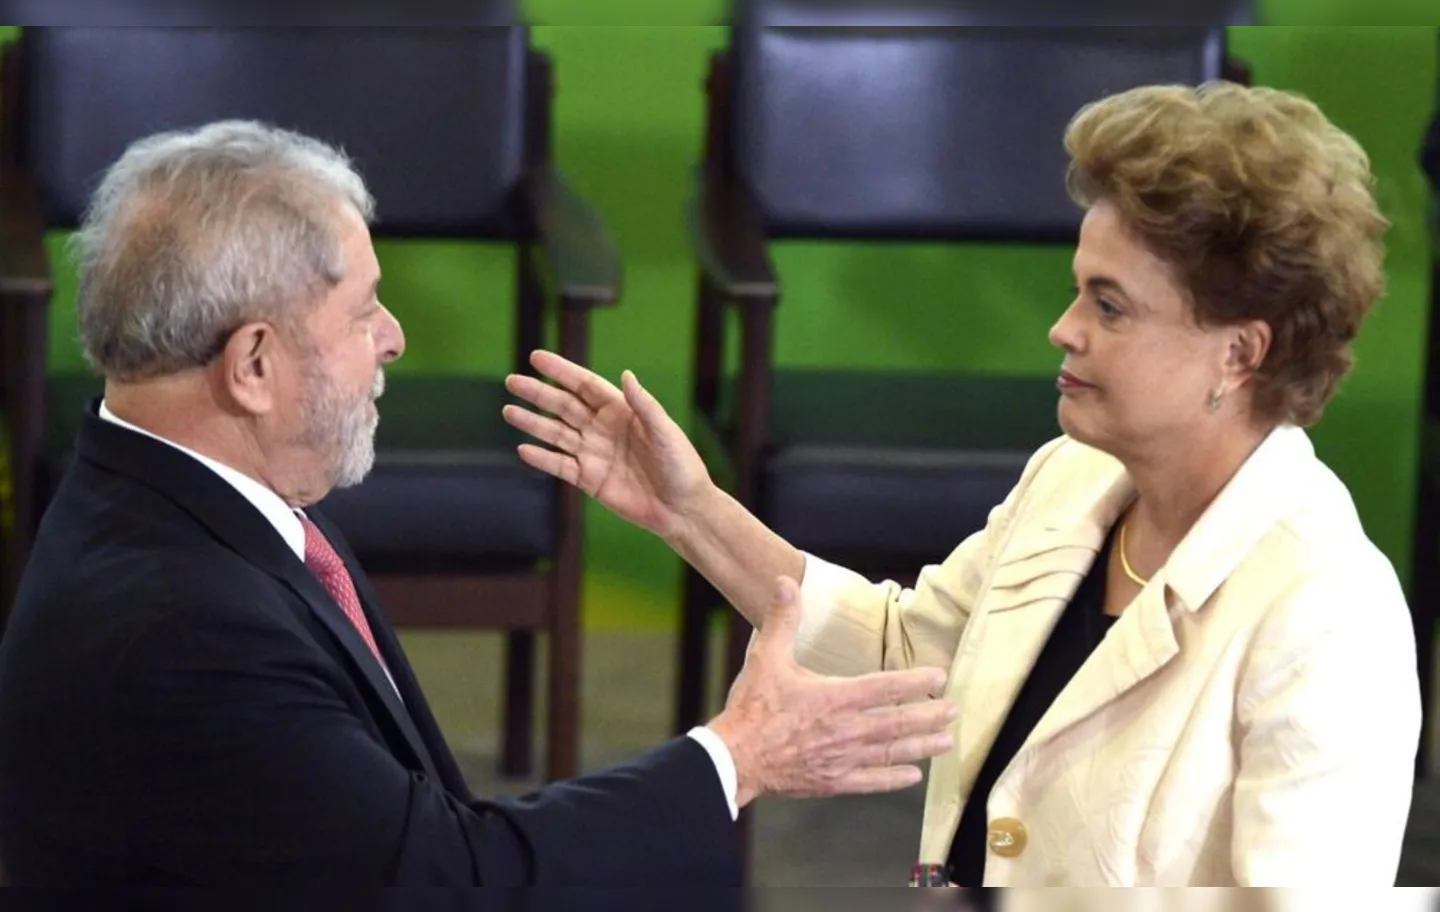 "Não tem sentido uma ex-presidente da República trabalhar de auxiliar em outro governo", diz Lula sobre Dilma, para em seguida elogiá-la